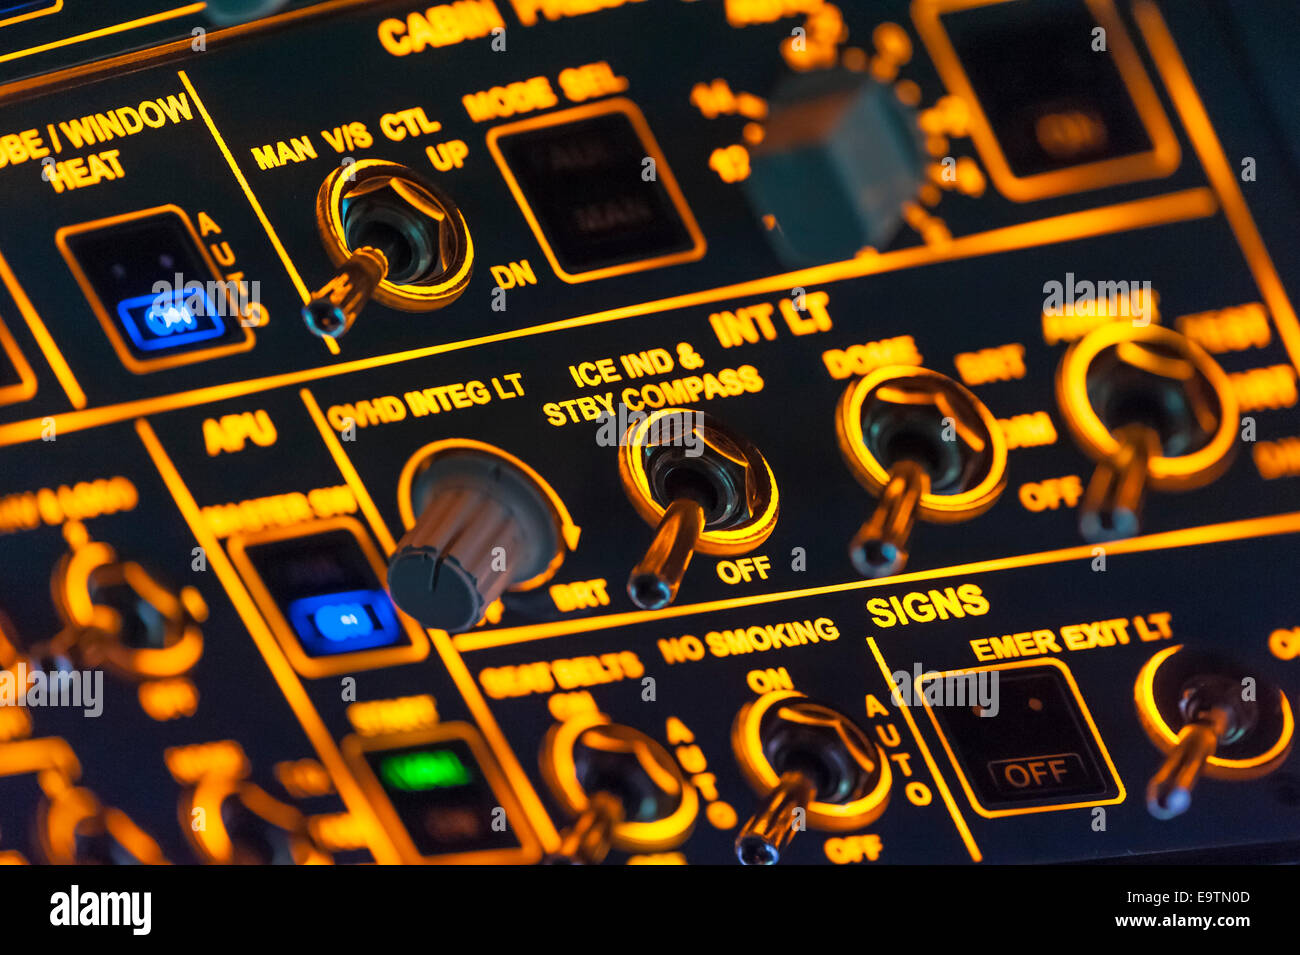 Cabina de un simulador de vuelo Airbus A320 que se utiliza para la formación profesional de los pilotos de líneas aéreas (controles superiores detalle) Foto de stock